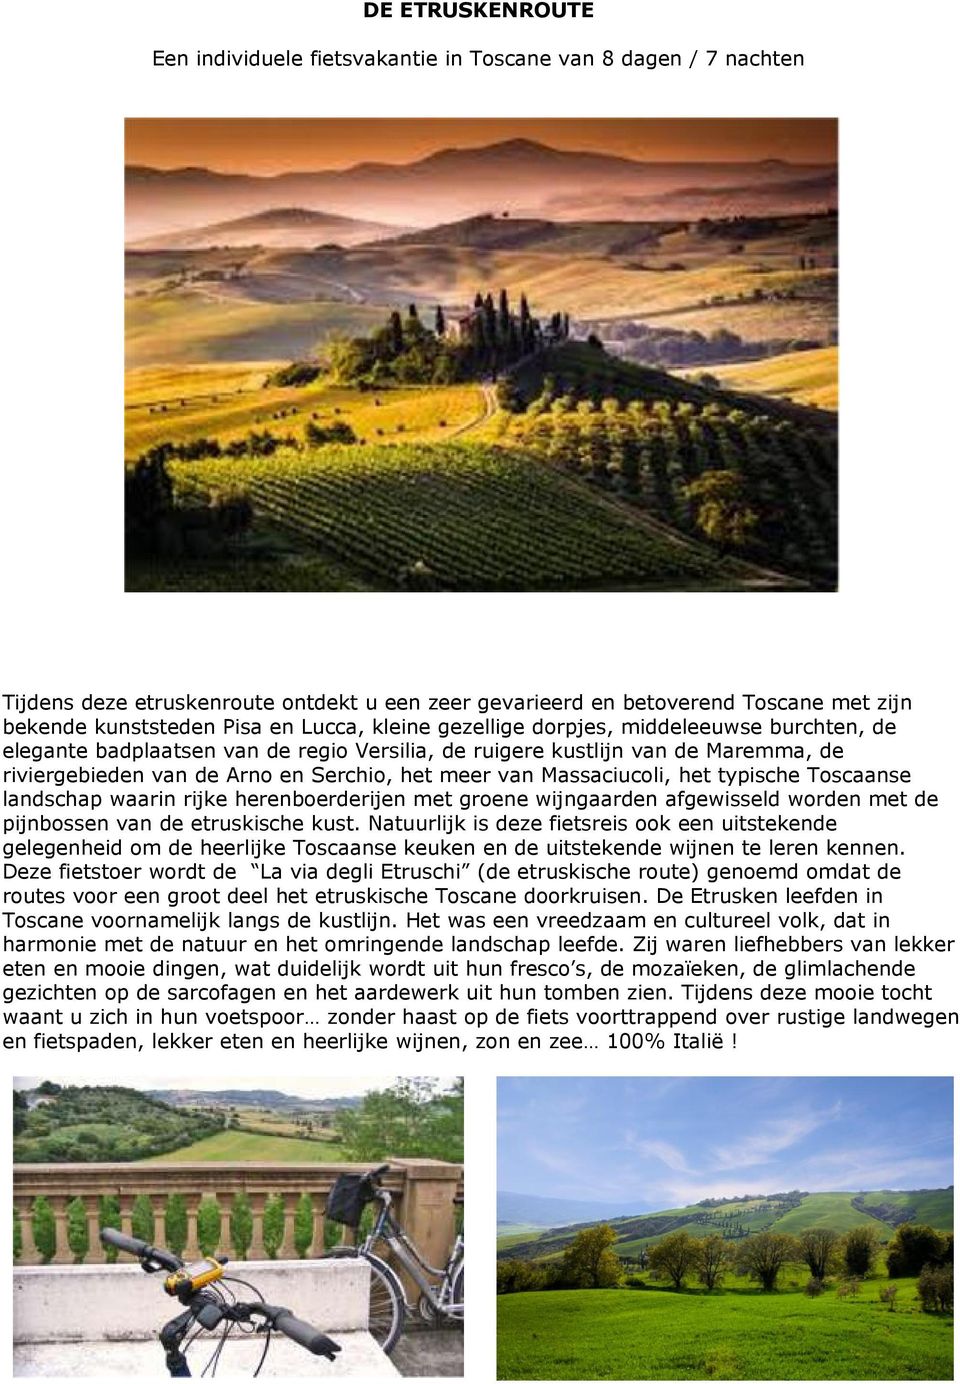 Massaciucoli, het typische Toscaanse landschap waarin rijke herenboerderijen met groene wijngaarden afgewisseld worden met de pijnbossen van de etruskische kust.